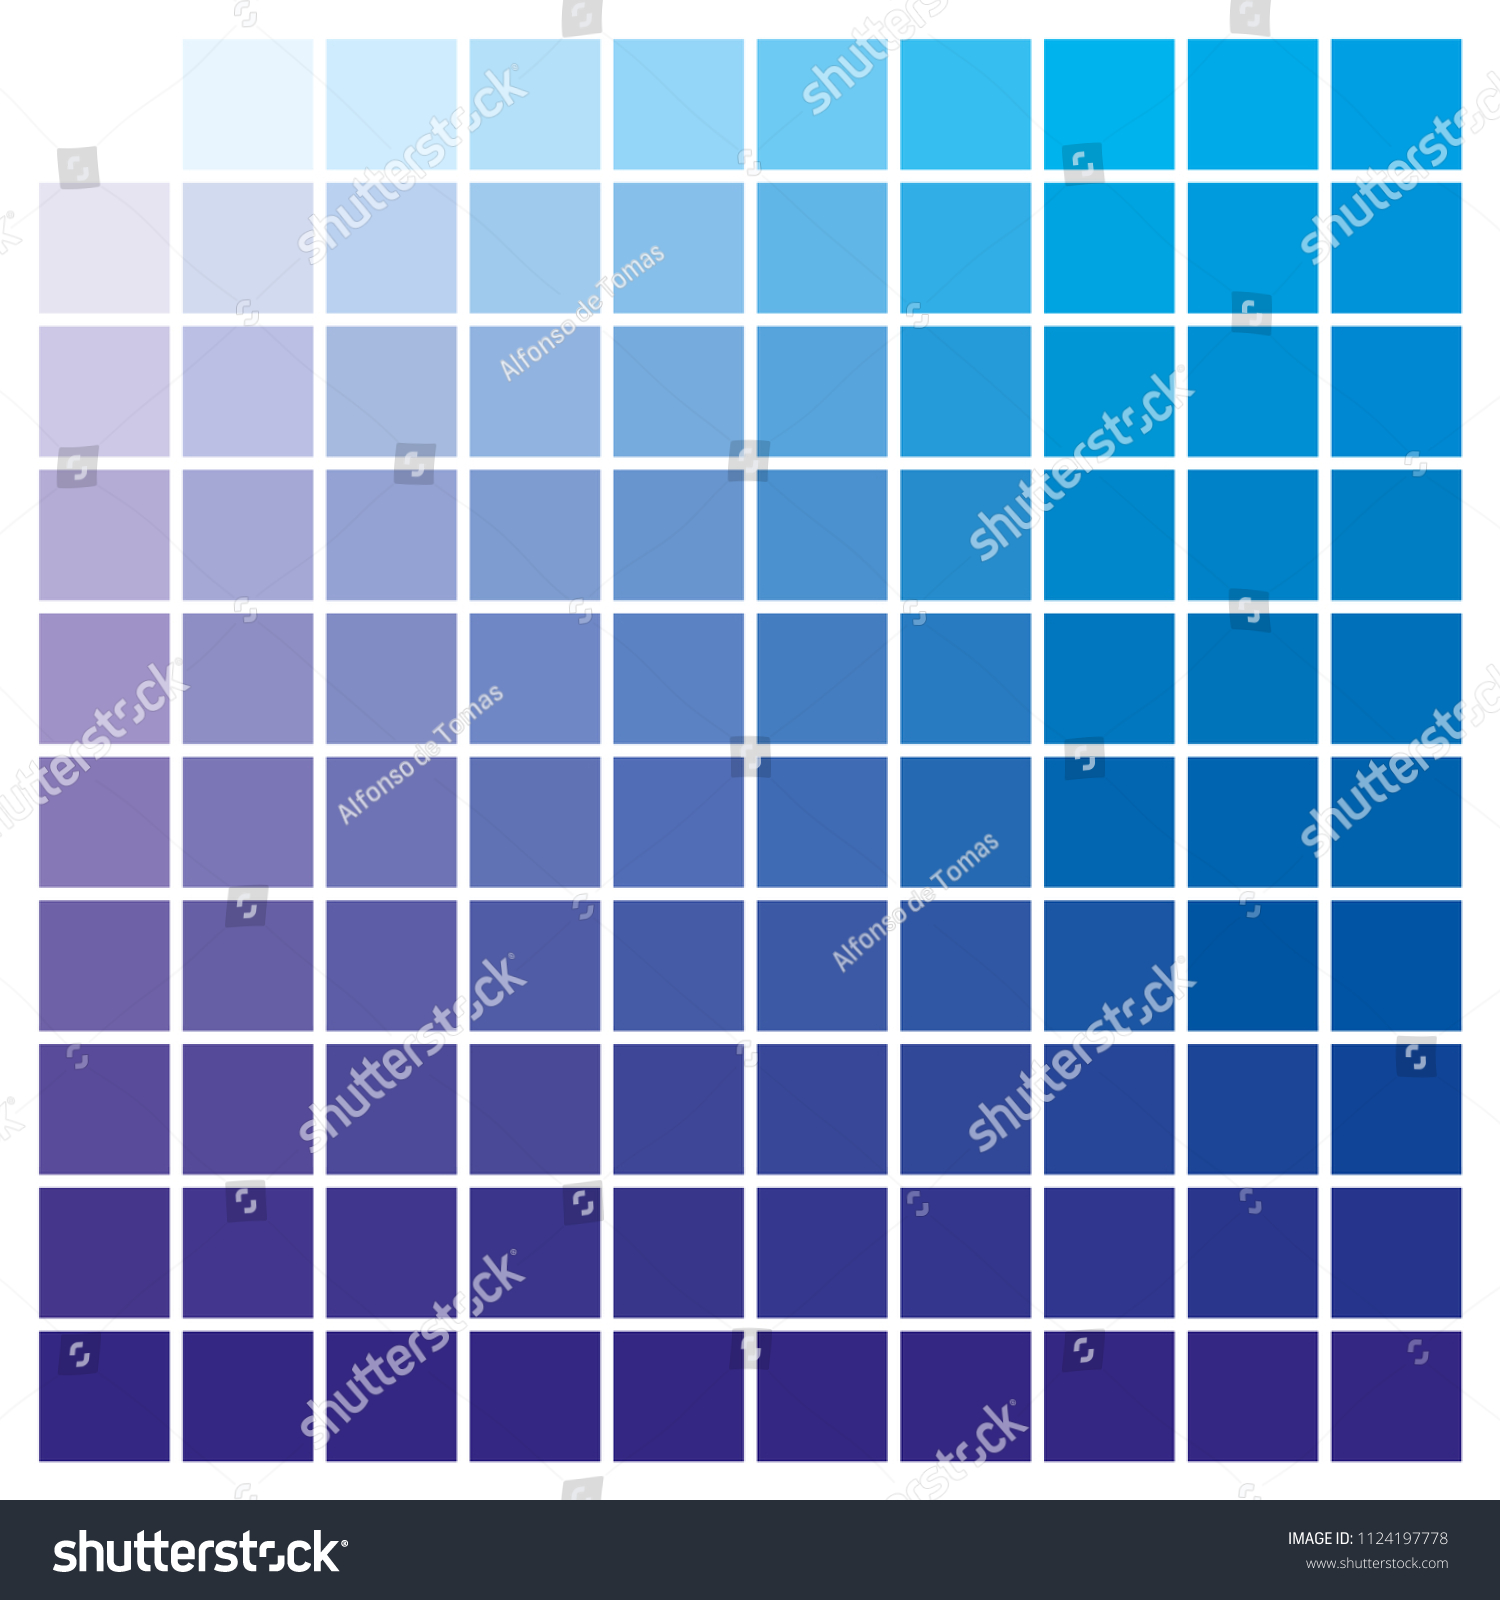 プレプレスや印刷で使用するcmykカラーチャート 色見本を選択するために使用します 青とシアンは基本色で 他の色はそれらを組み合わせて作成されています グラフィックアート用の色とインクカタログ のベクター画像素材 ロイヤリティフリー